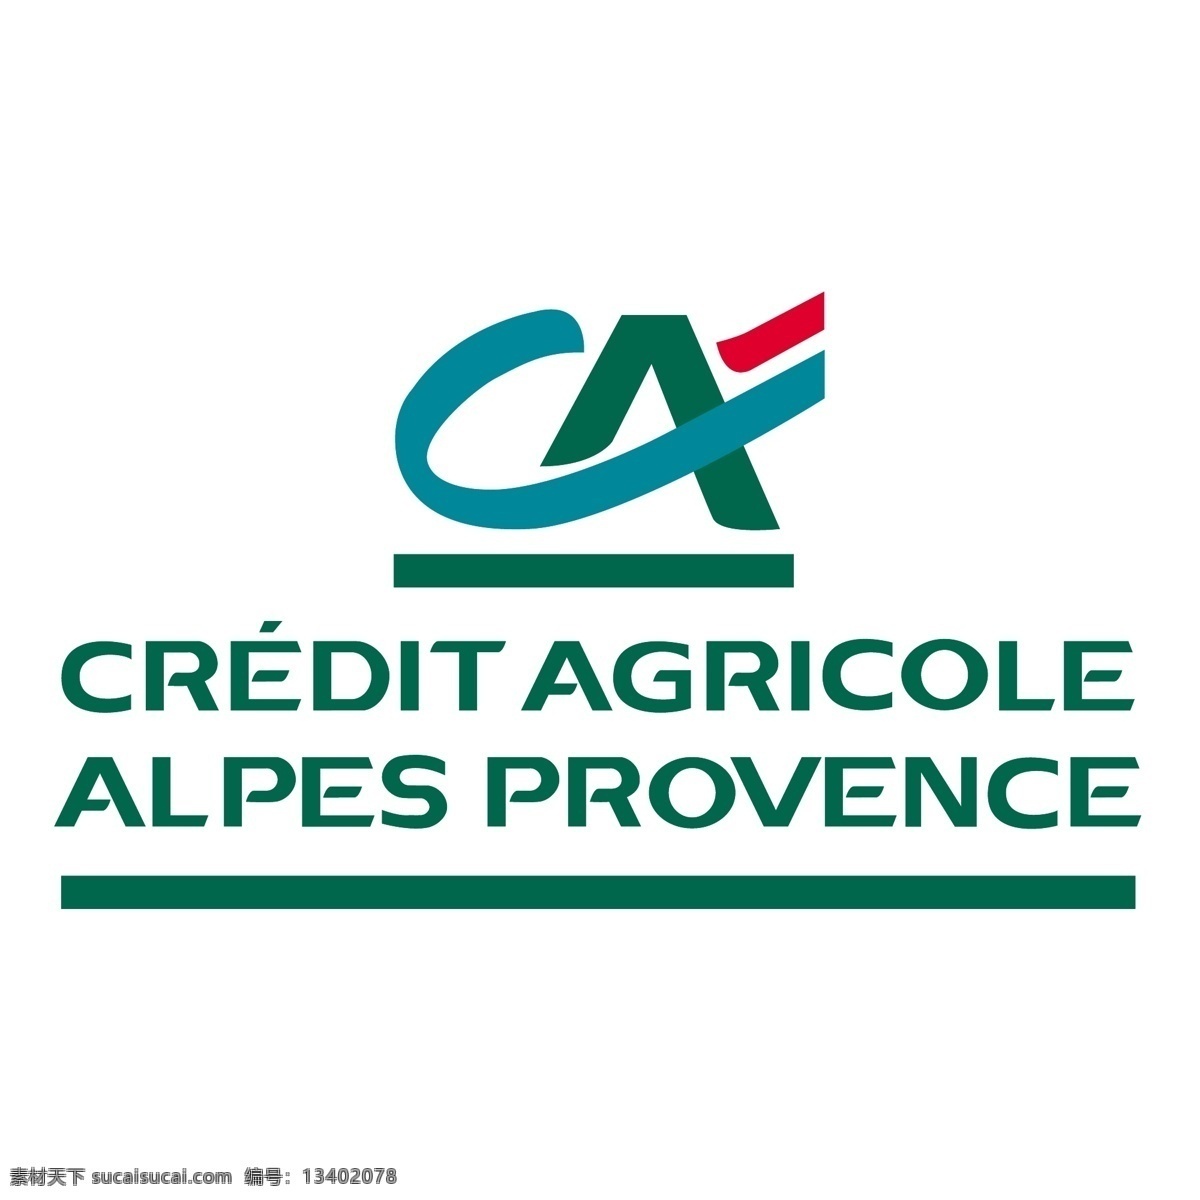 法国 农业 信贷 银行 阿尔卑斯 普罗旺斯 信用 阿尔卑斯山 eps向量 向量 标识 矢量图 建筑家居